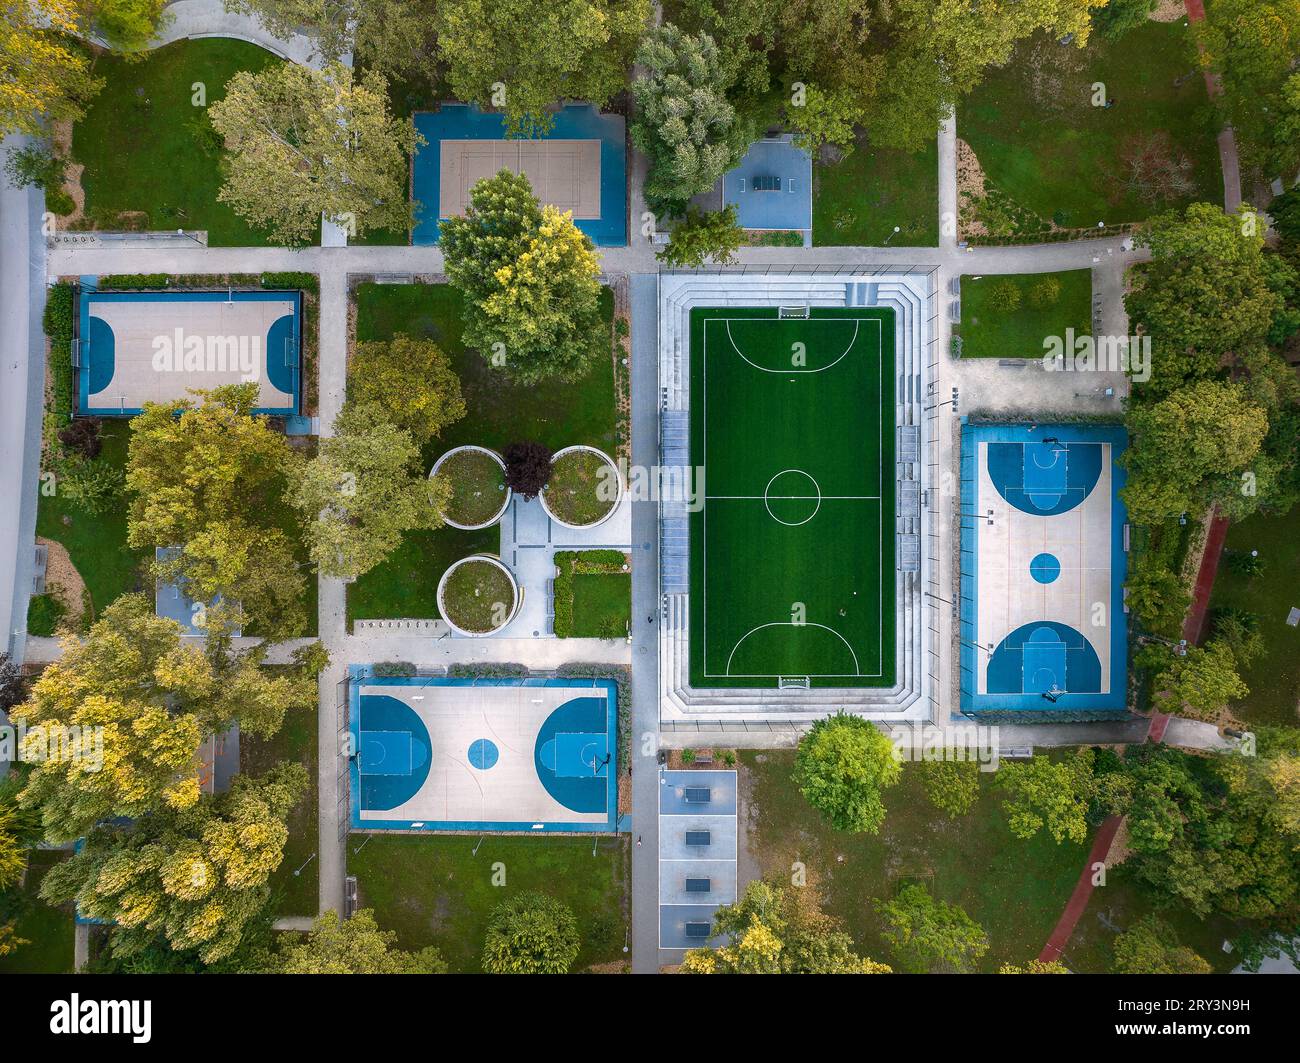 Campi sportivi in un parco con vista aerea. Foto aerea su foutball, campi da basket e tavoli da ping pong. Vista dall'alto di un parco ricreativo. Foto Stock